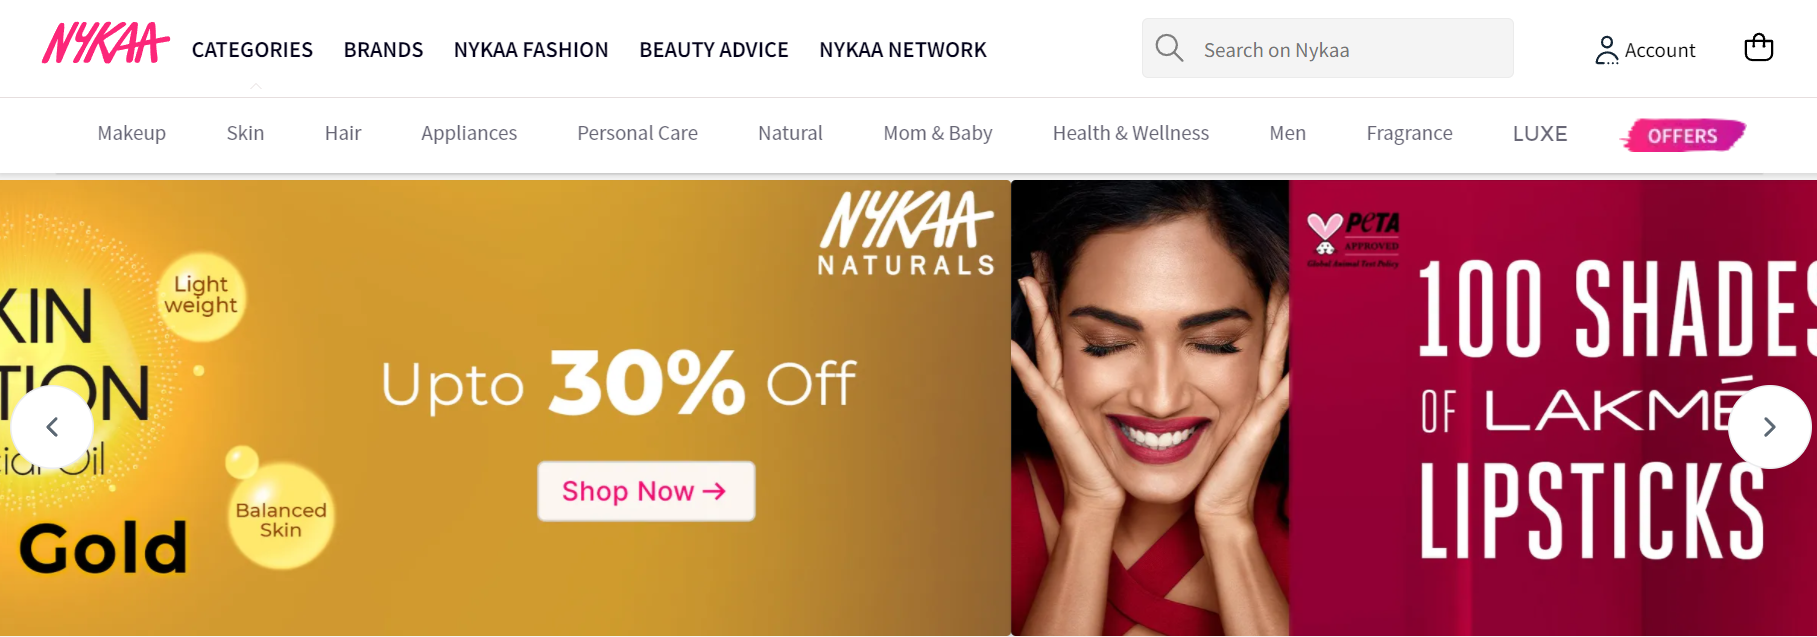 印度美妆时尚平台 Nykaa 市值达140亿美元，成为印度首家女性主导的“独角兽”企业